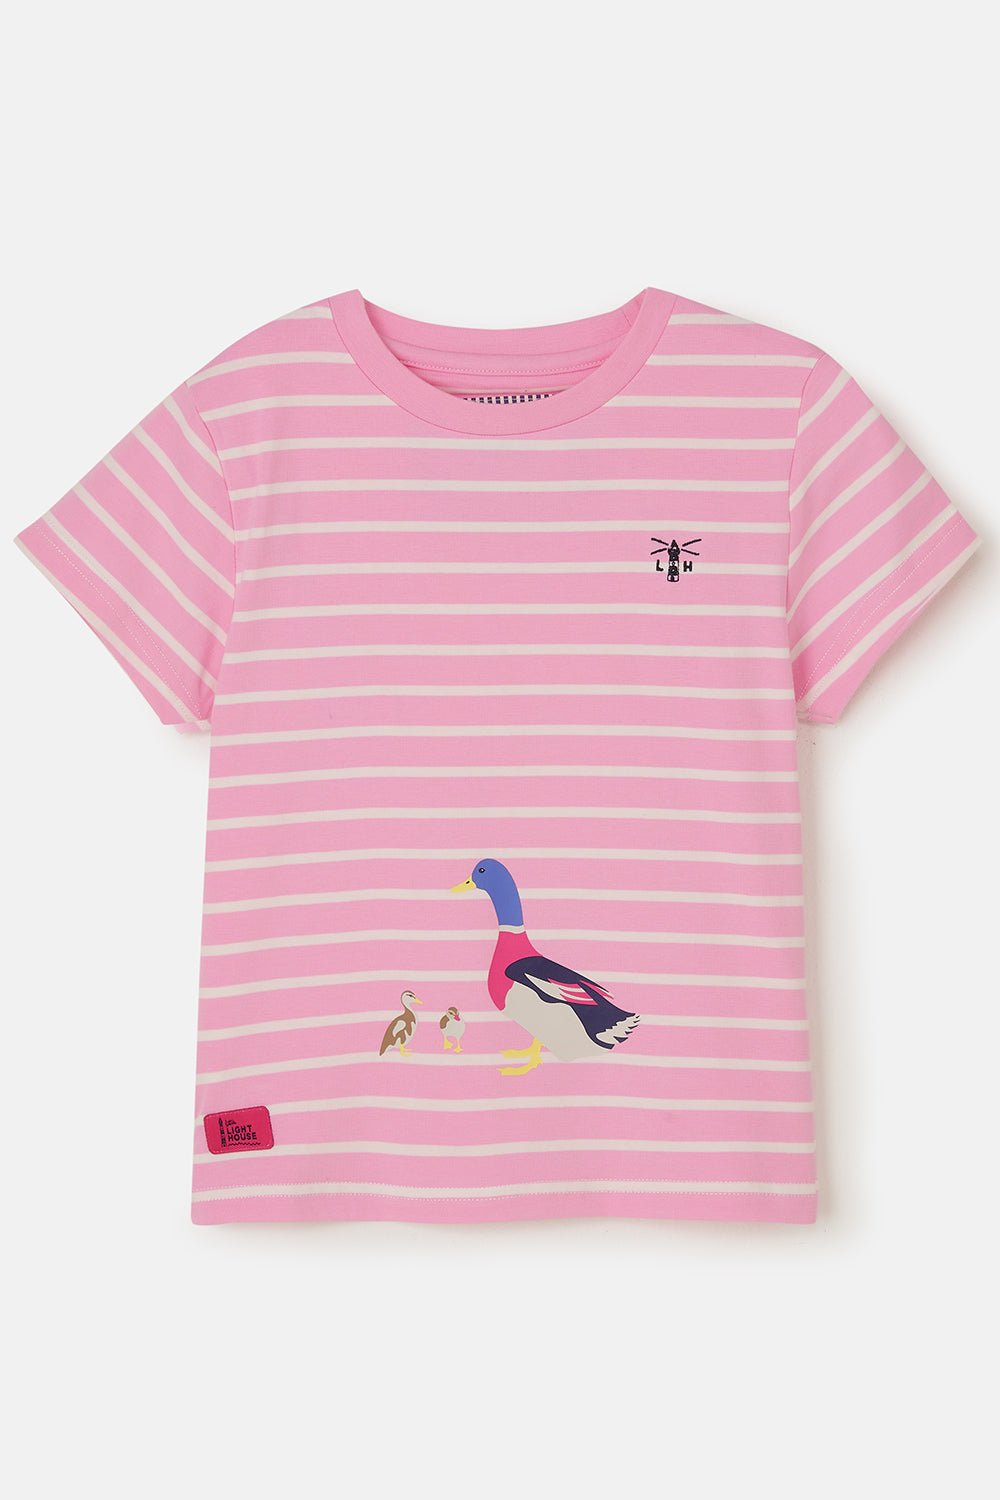 Causeway girls' t-shirt, Duck Print